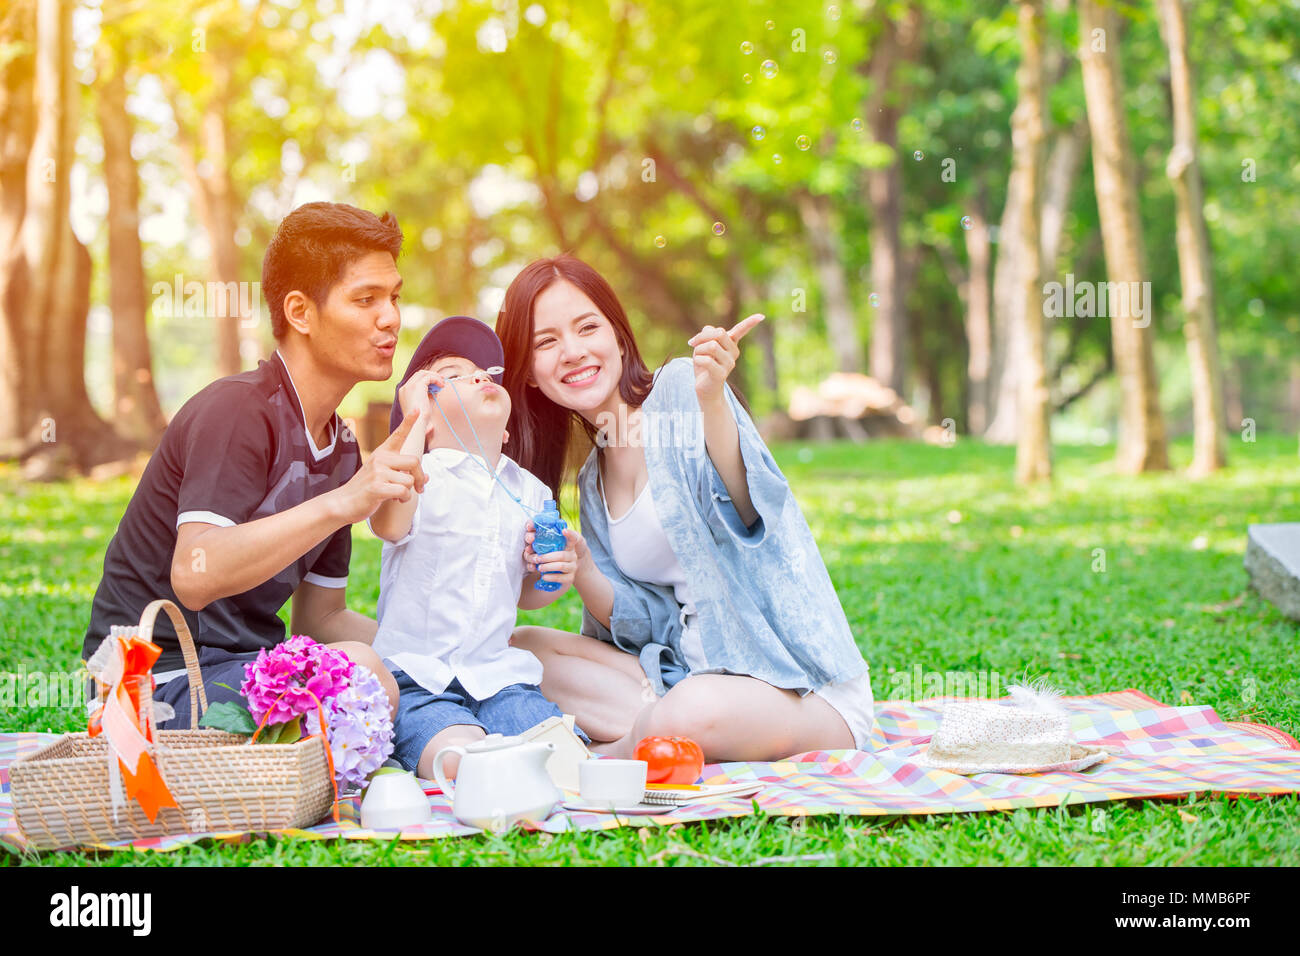 Un enfant de la famille vendeuse heureux vacances moment pique-nique dans le parc. Jouer bubble. Banque D'Images